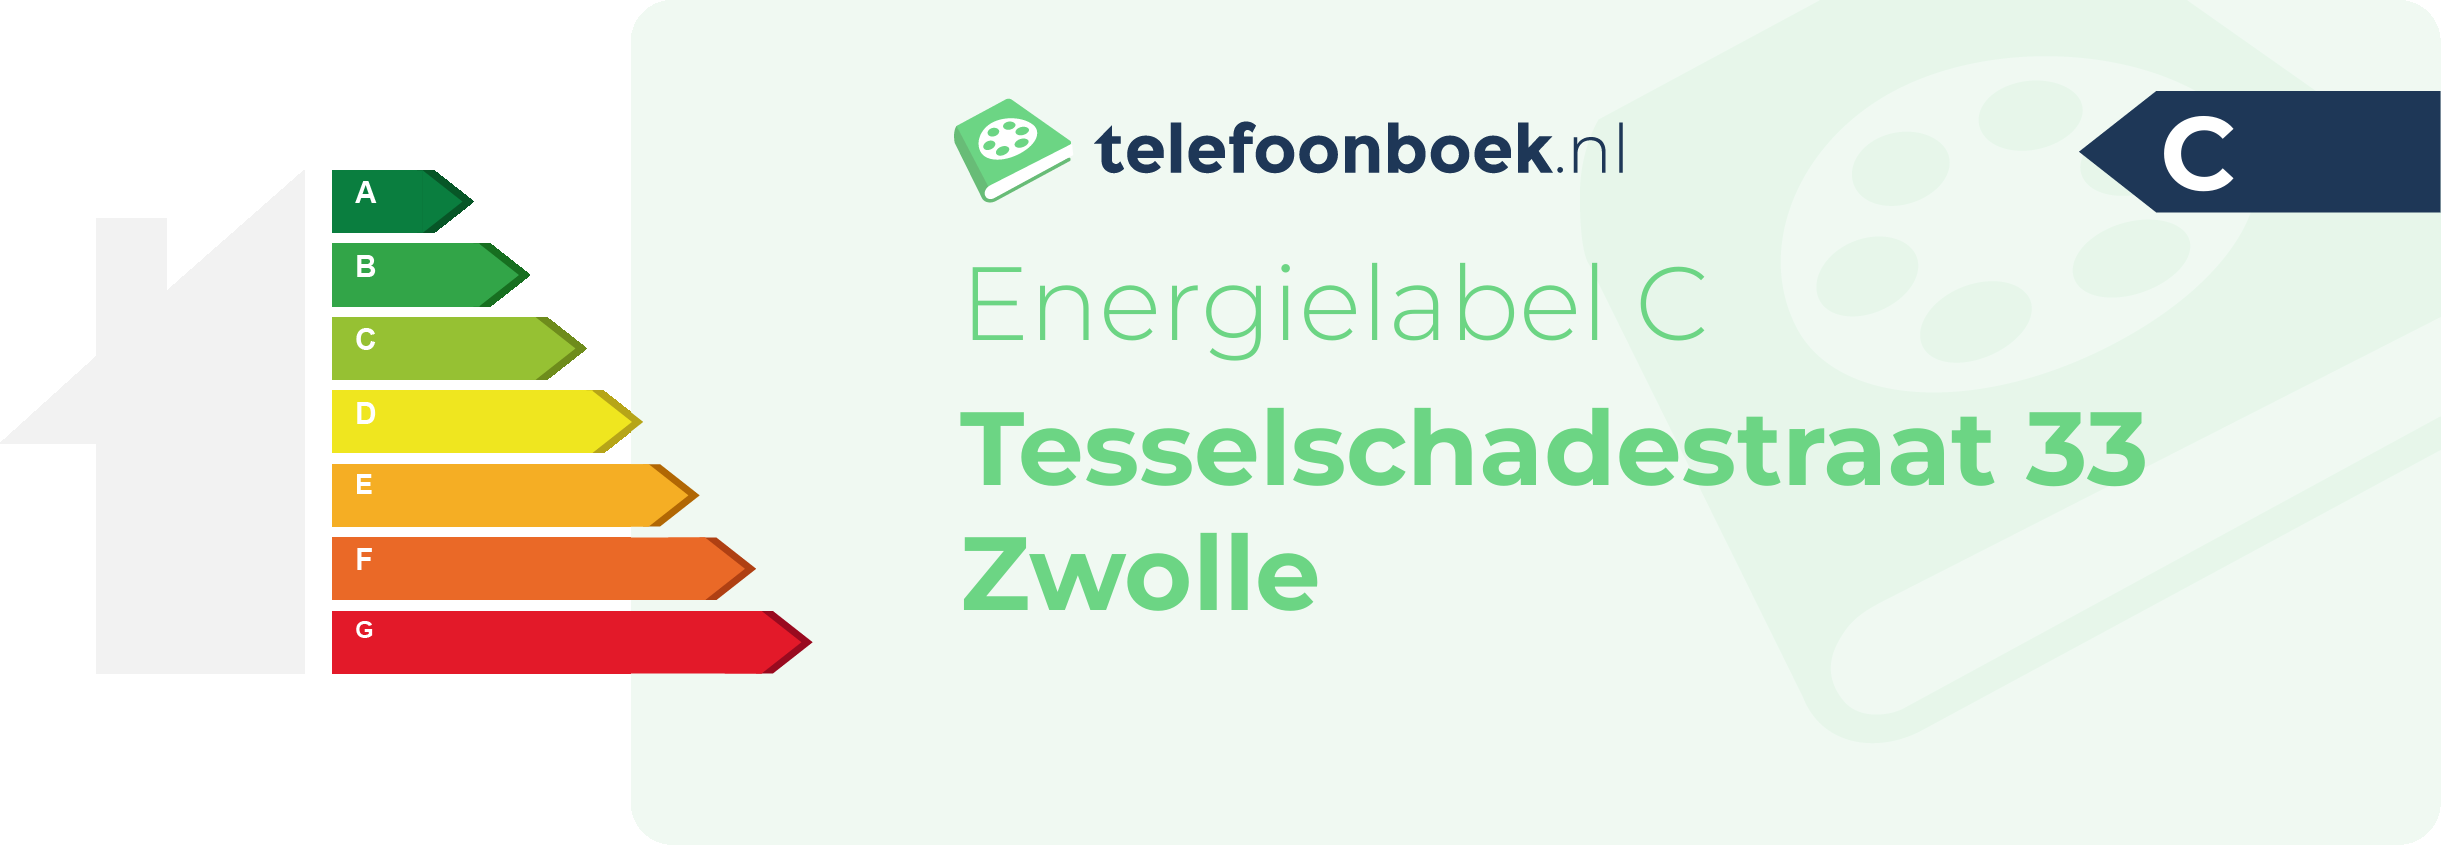 Energielabel Tesselschadestraat 33 Zwolle